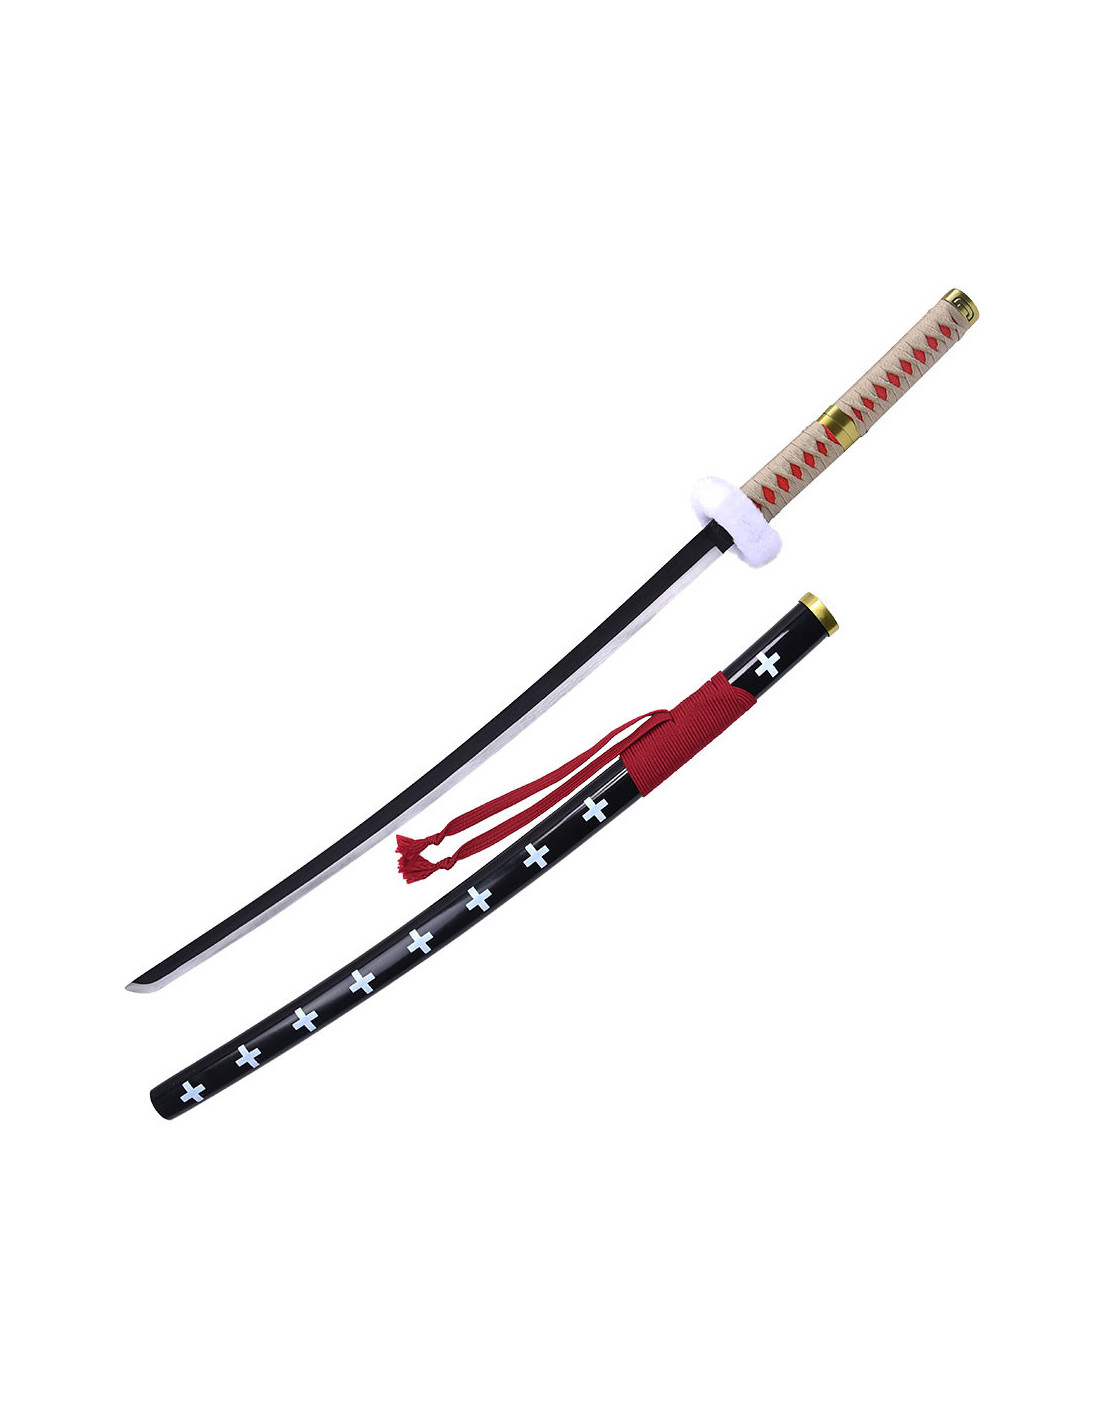 Comprar Katanas y Iaitos! Venta de las mejores espadas japonesas